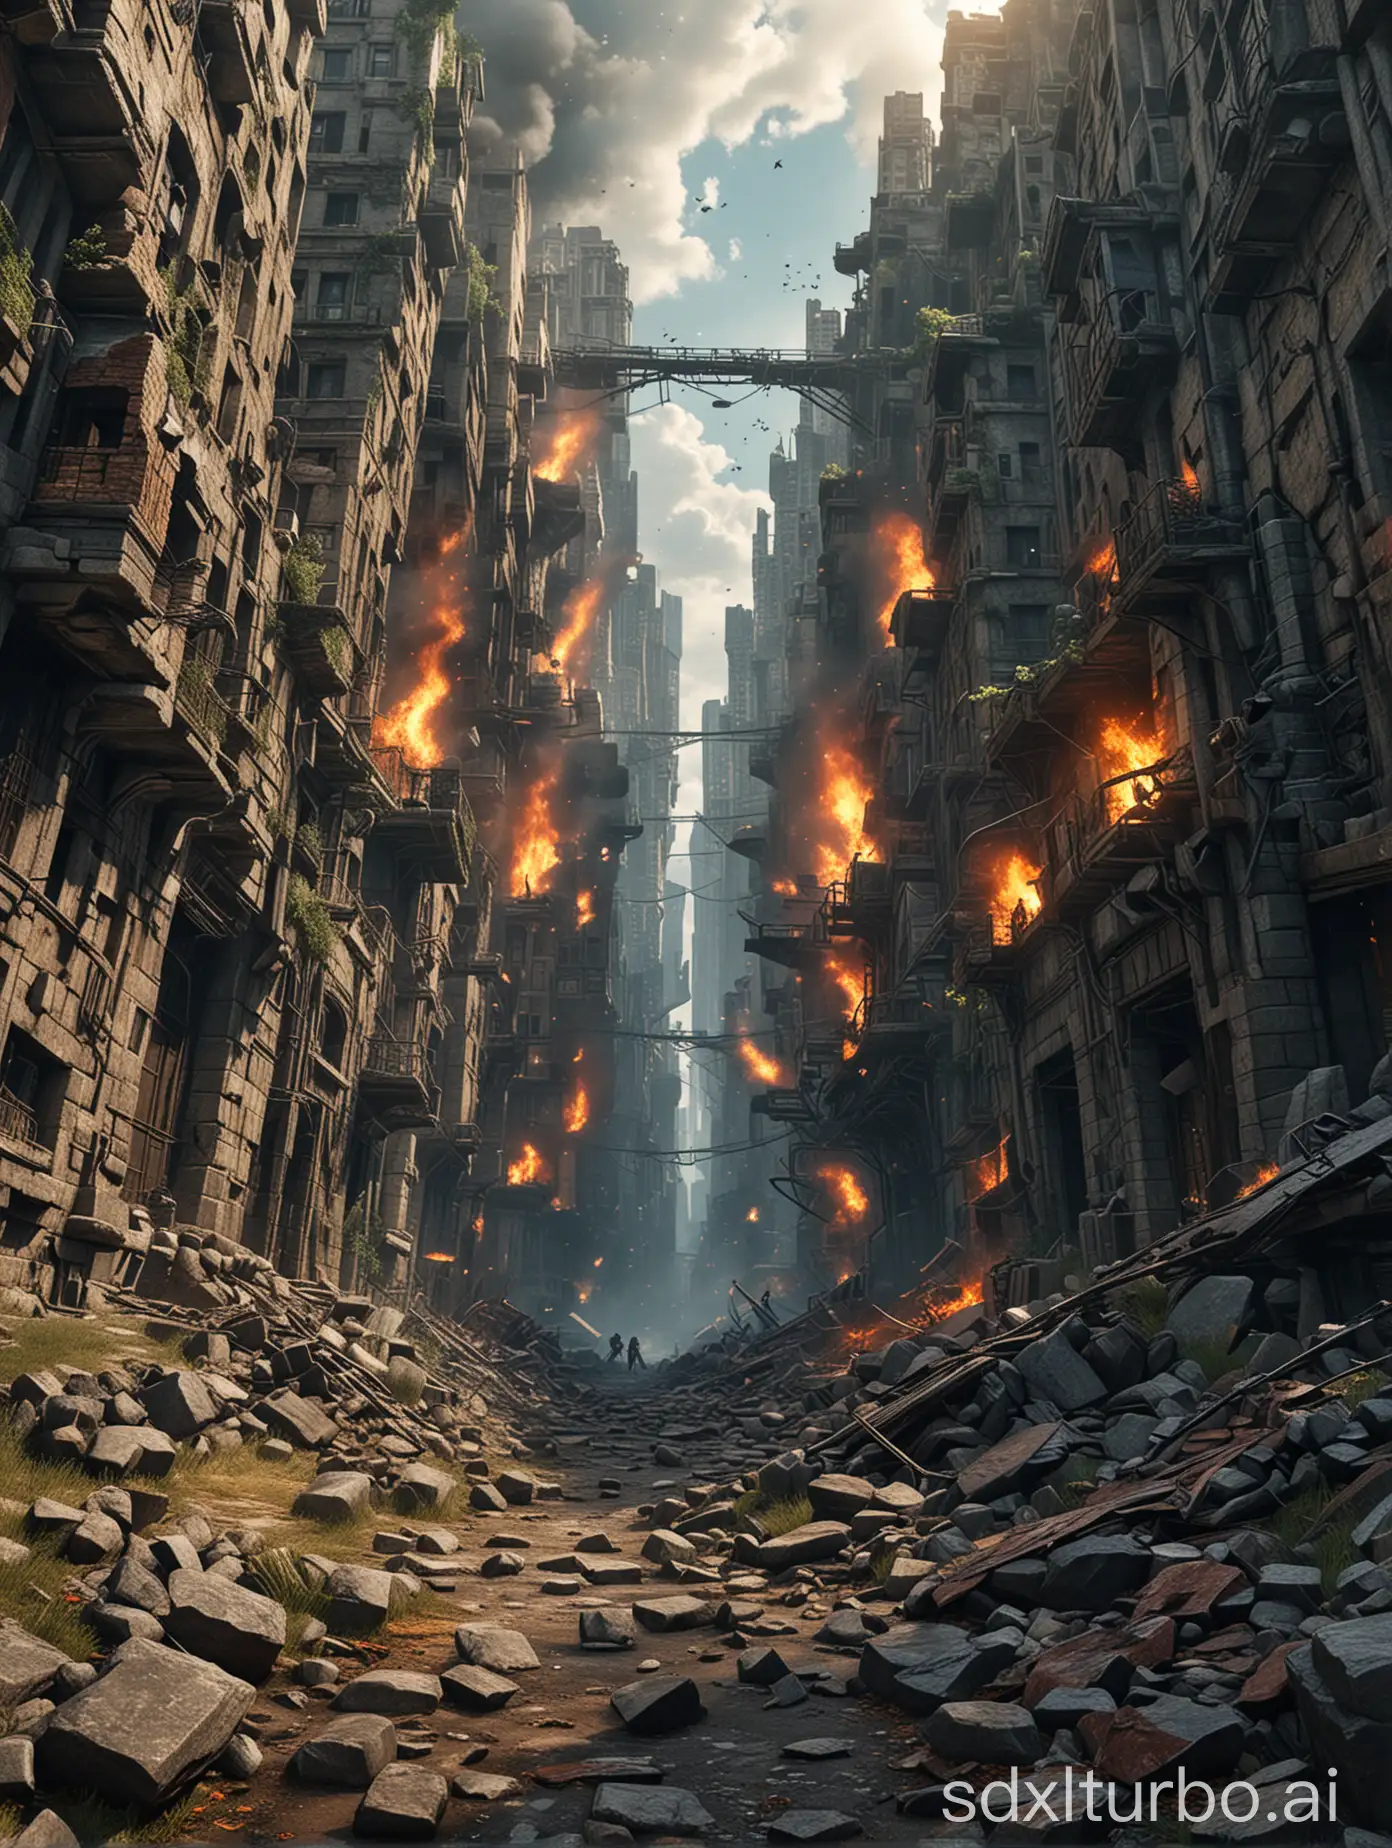 Epic-Battle-in-a-Ruined-Metropolis-Dynamic-FireLike-Action-Landscape